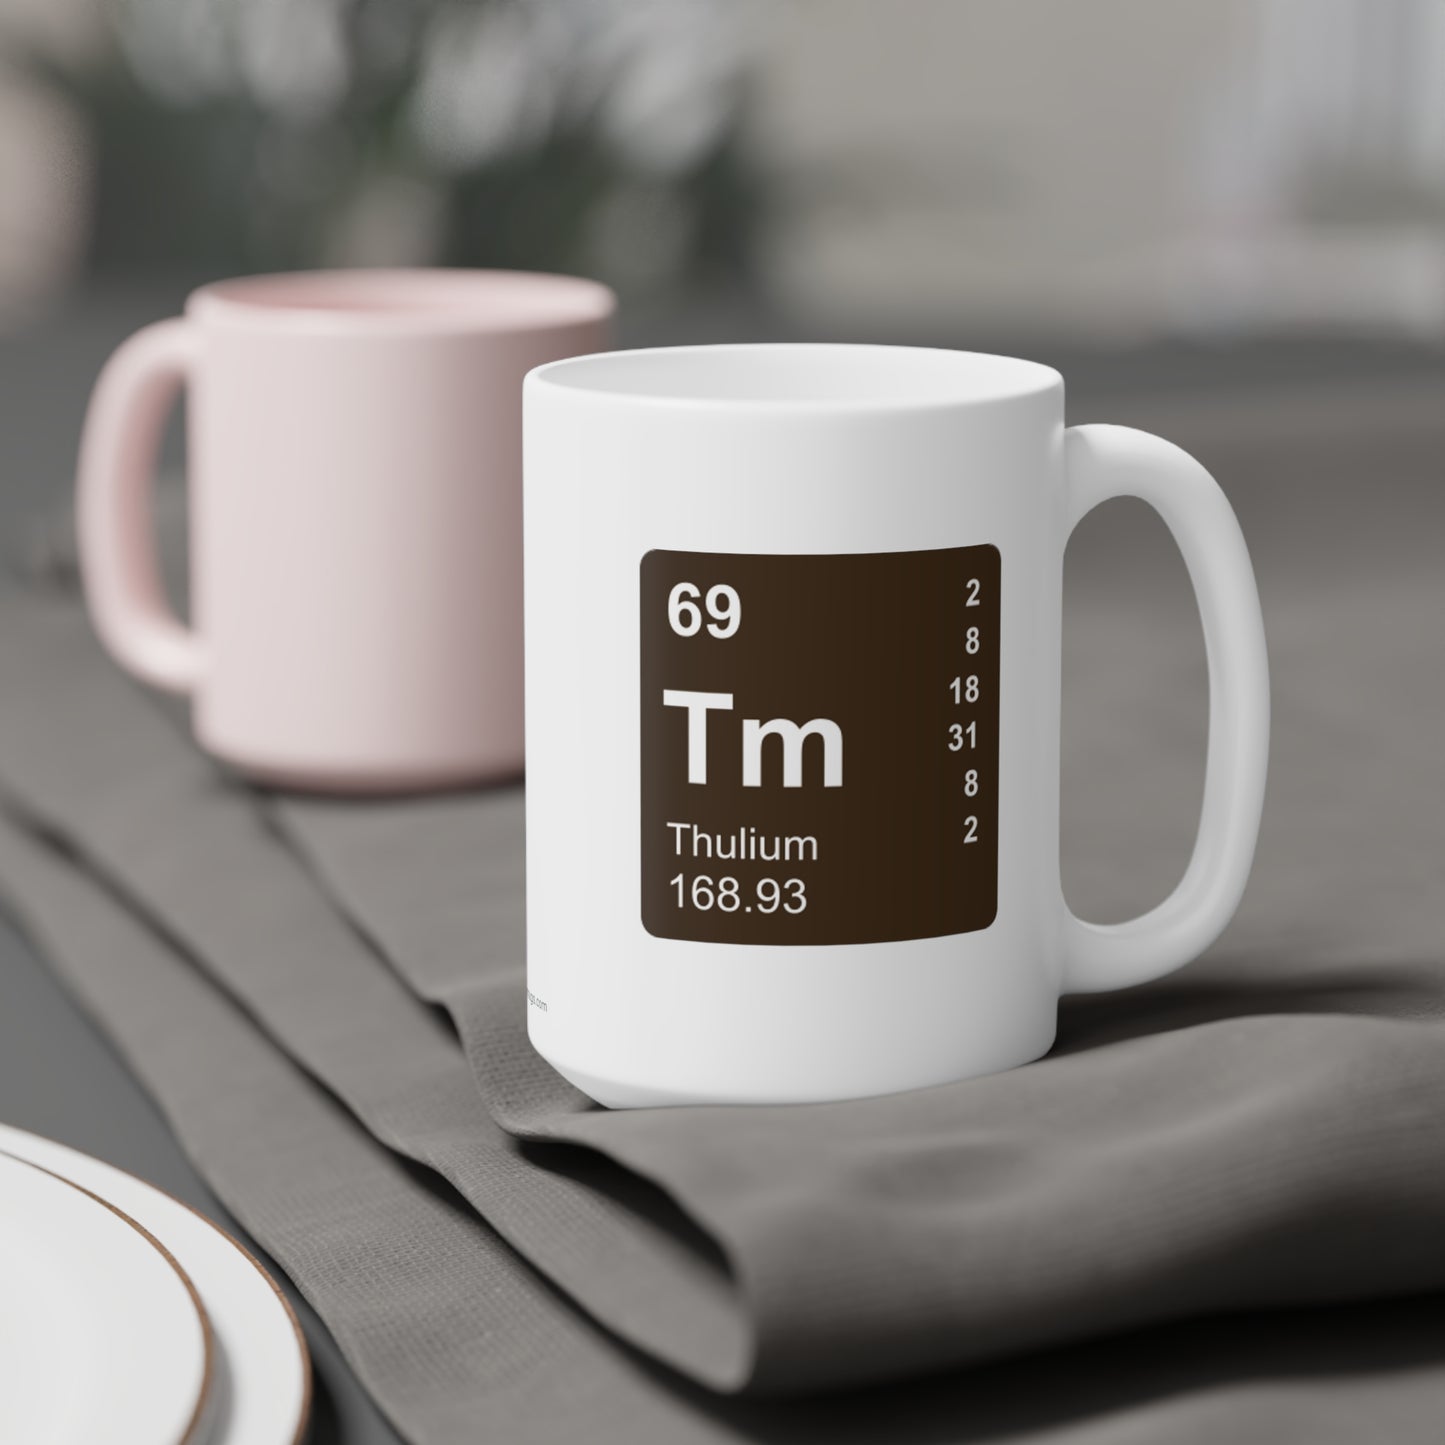 Coffee Mug 15oz - (069) Thulium Tm